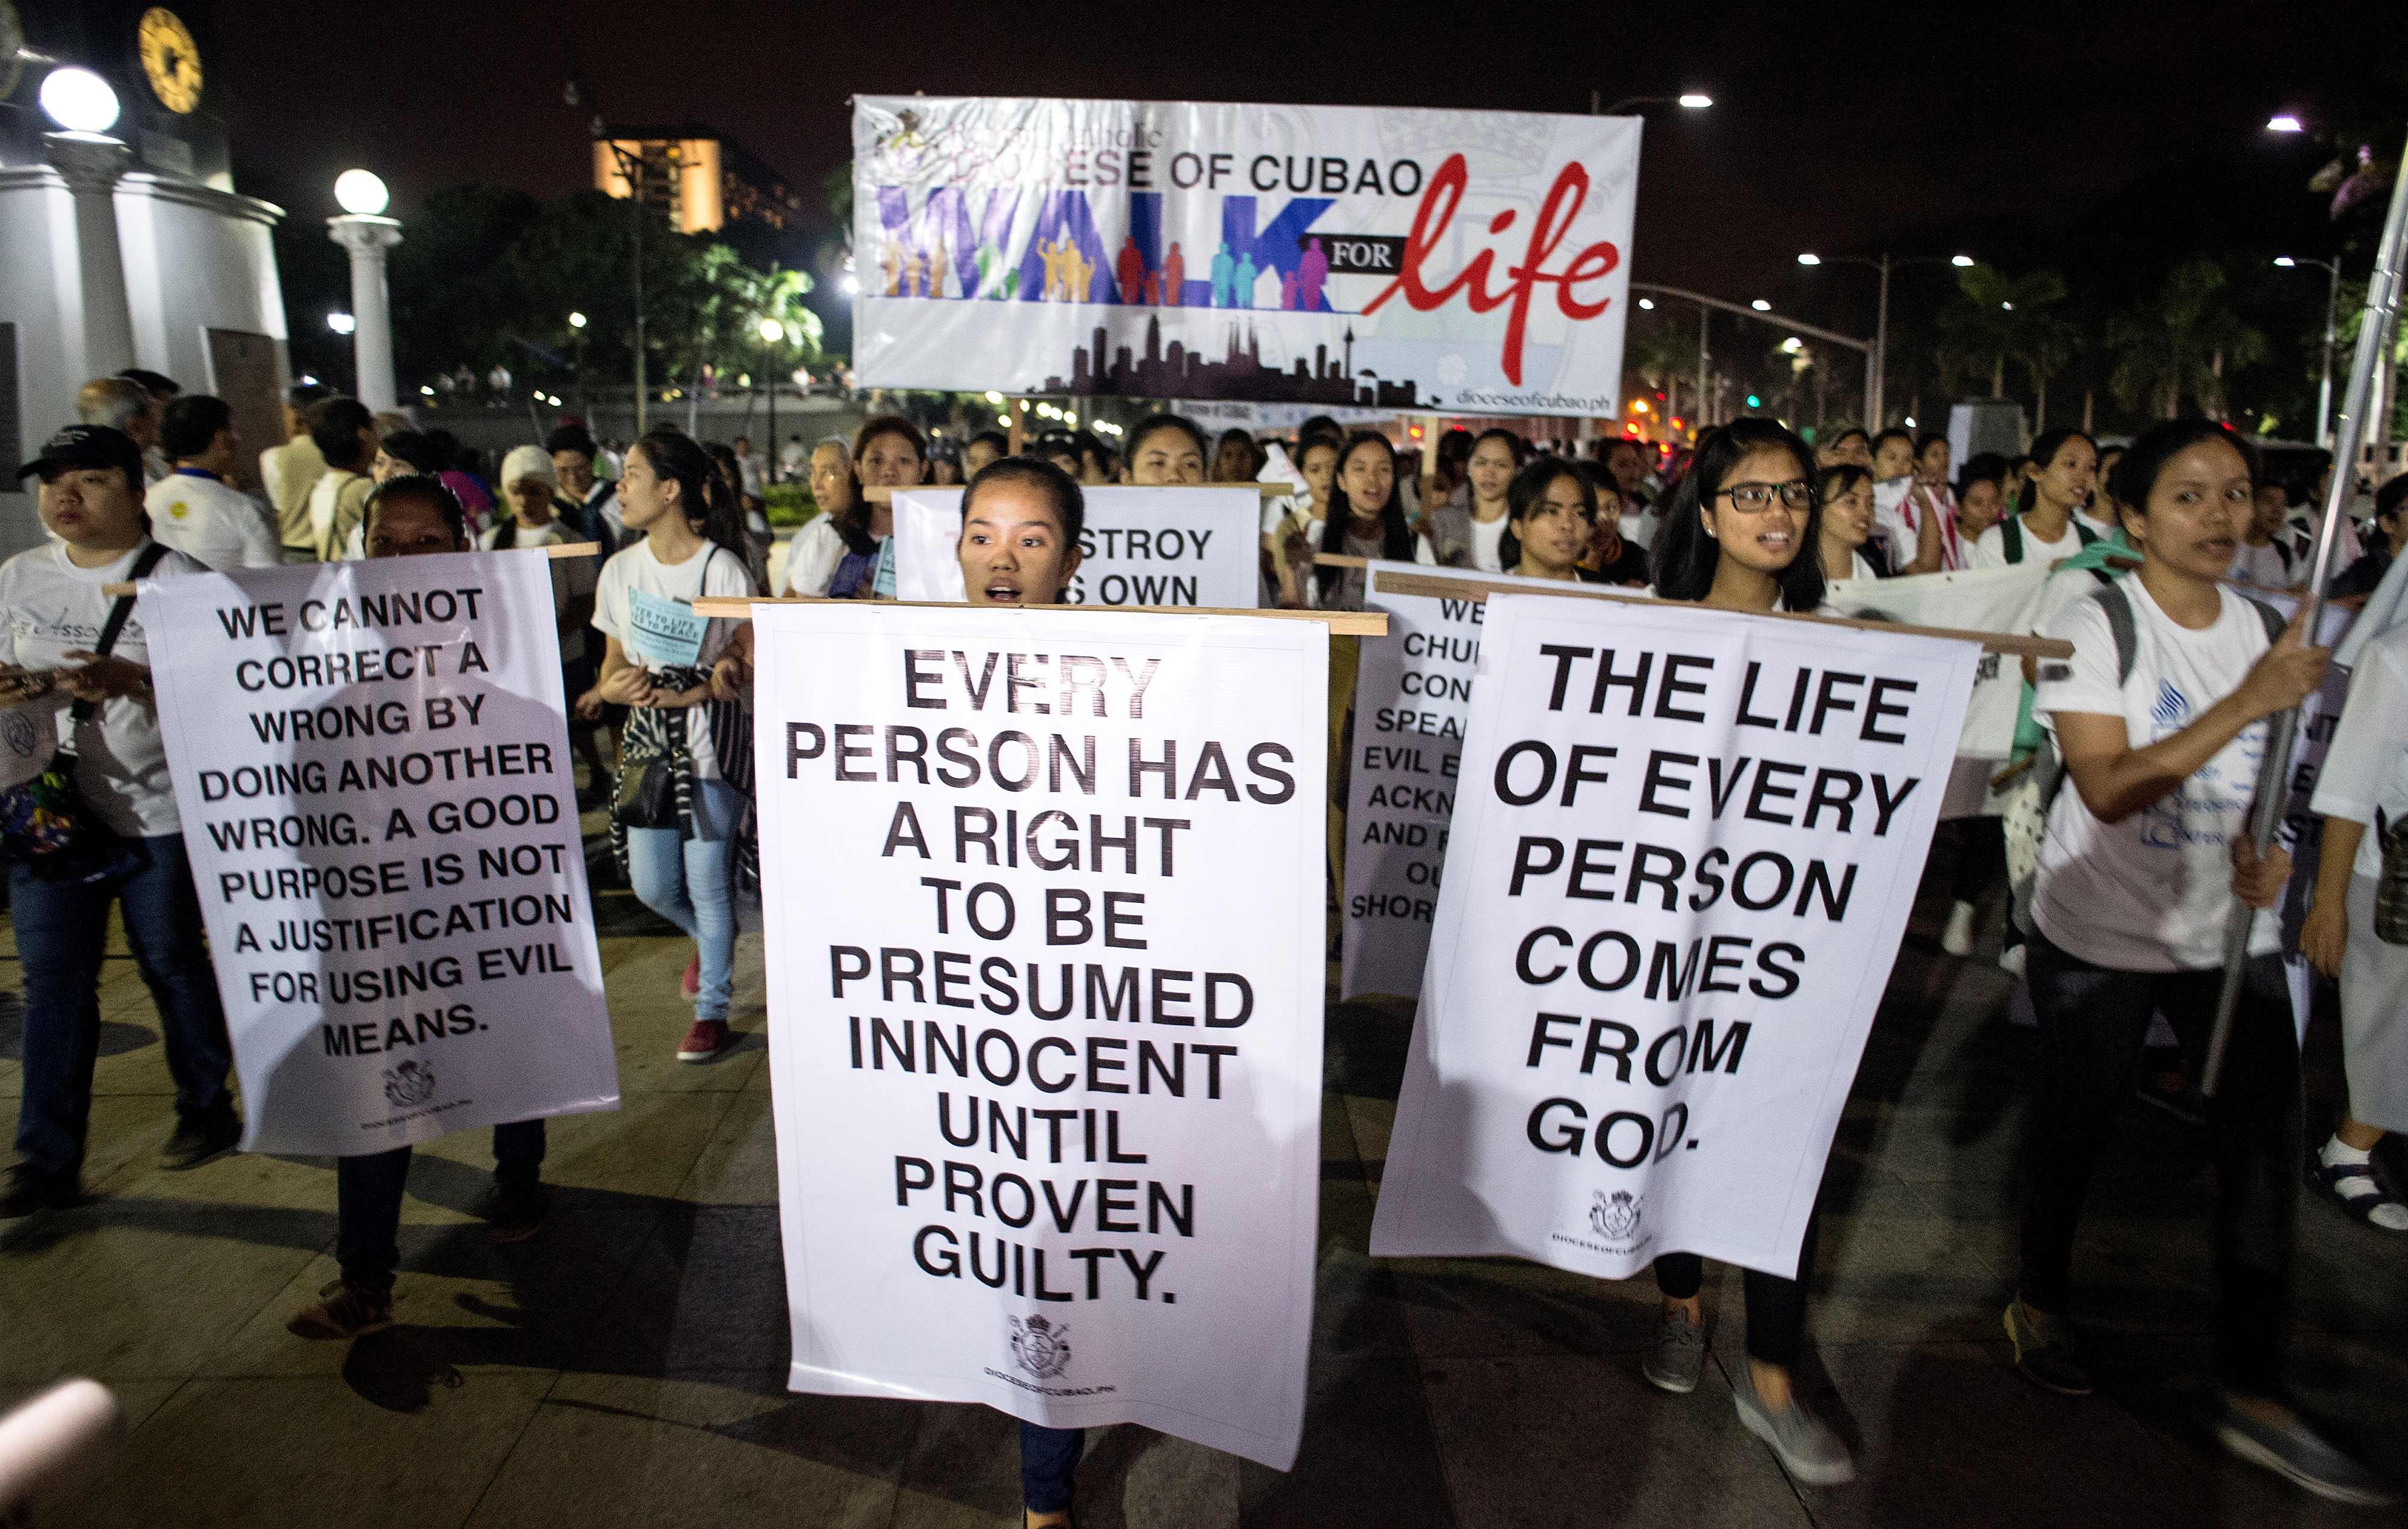 آلاف فى الفلبين ينظمون مسيرة ضد عقوبة الإعدام والحرب على المخدرات